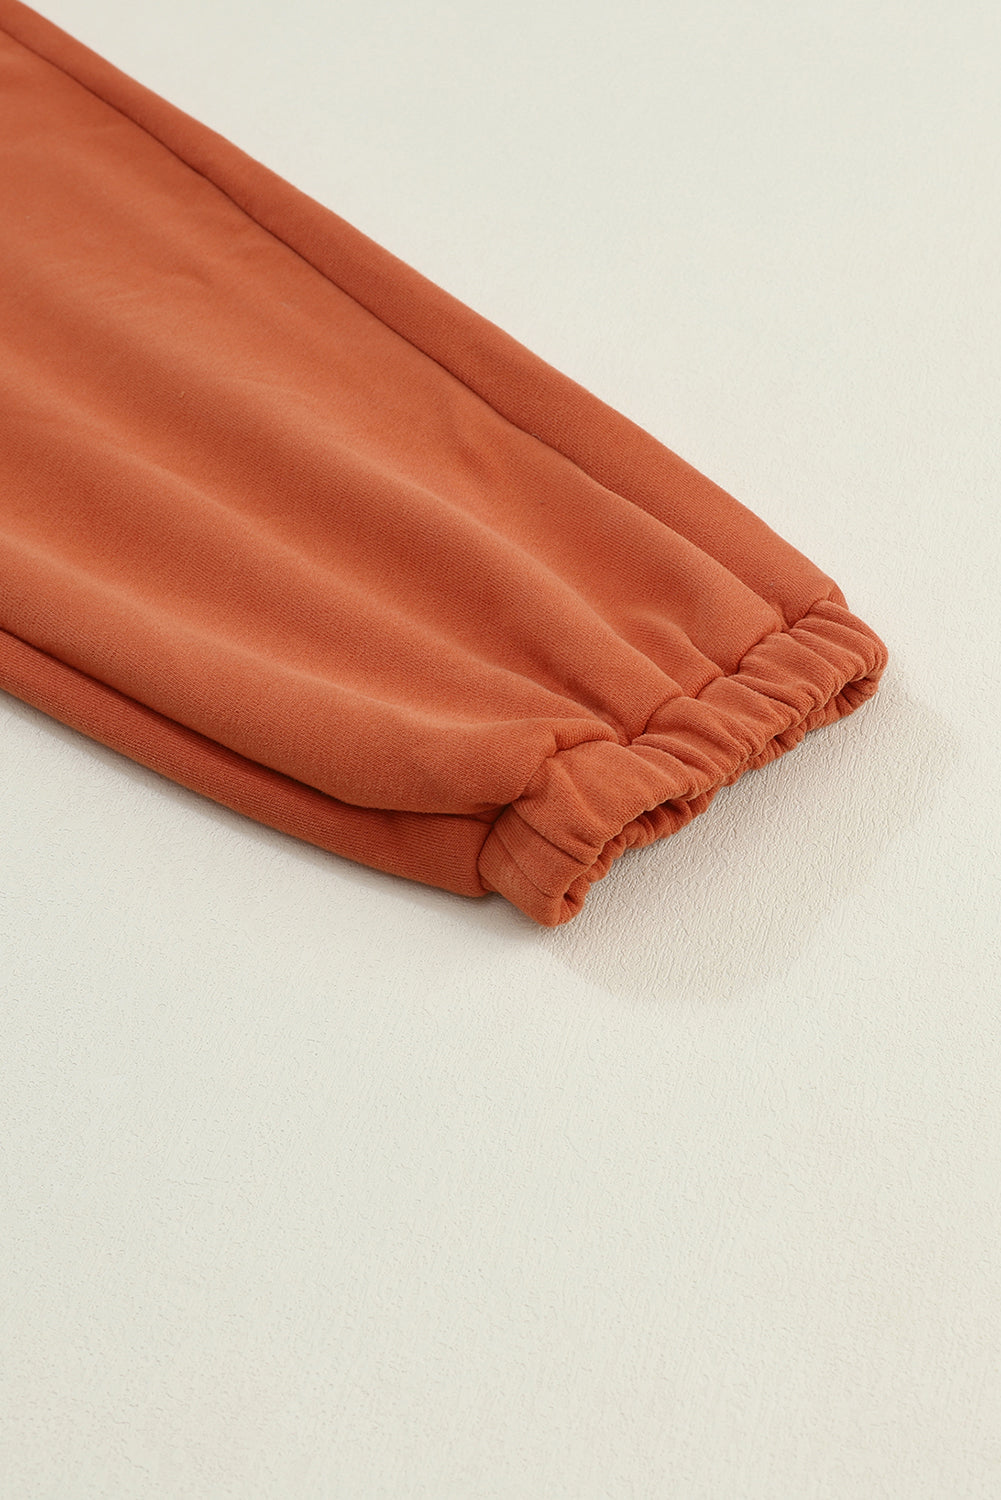 Pantalon de jogging orange avec poches cargo et cordon de serrage